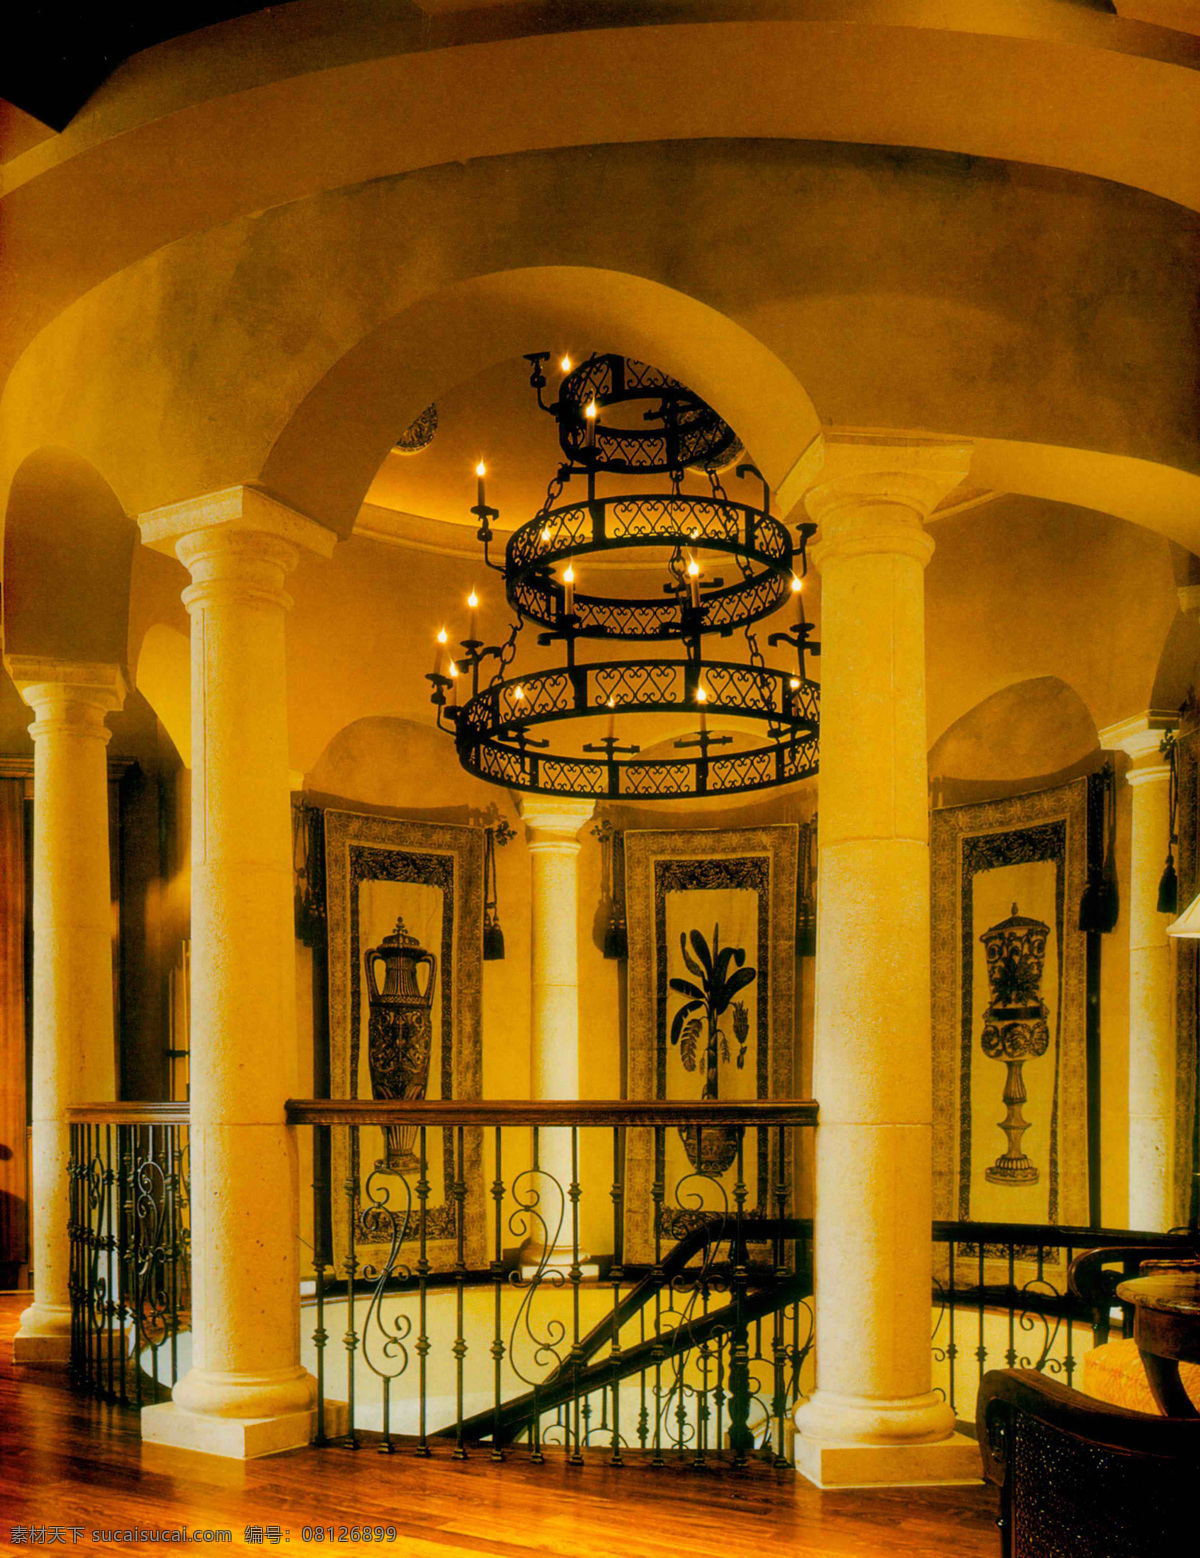 室内设计 实景 照片 资料图片 餐厅 建筑园林 楼梯 室内 室内摄影 资料 过厅 装饰素材